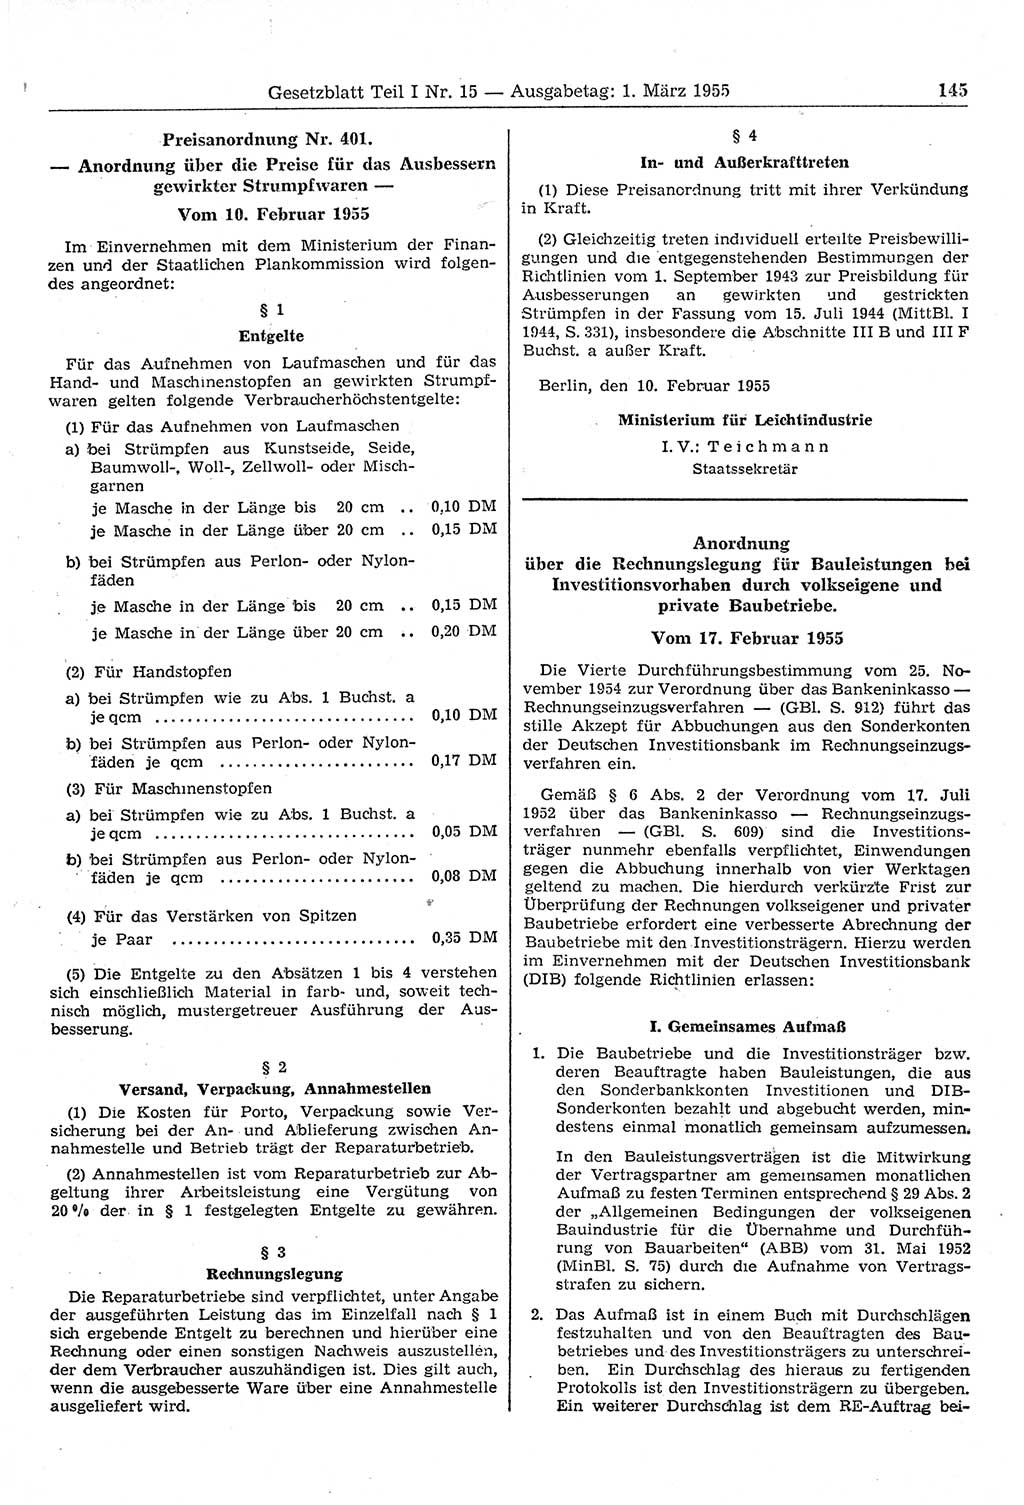 Gesetzblatt (GBl.) der Deutschen Demokratischen Republik (DDR) Teil Ⅰ 1955, Seite 145 (GBl. DDR Ⅰ 1955, S. 145)